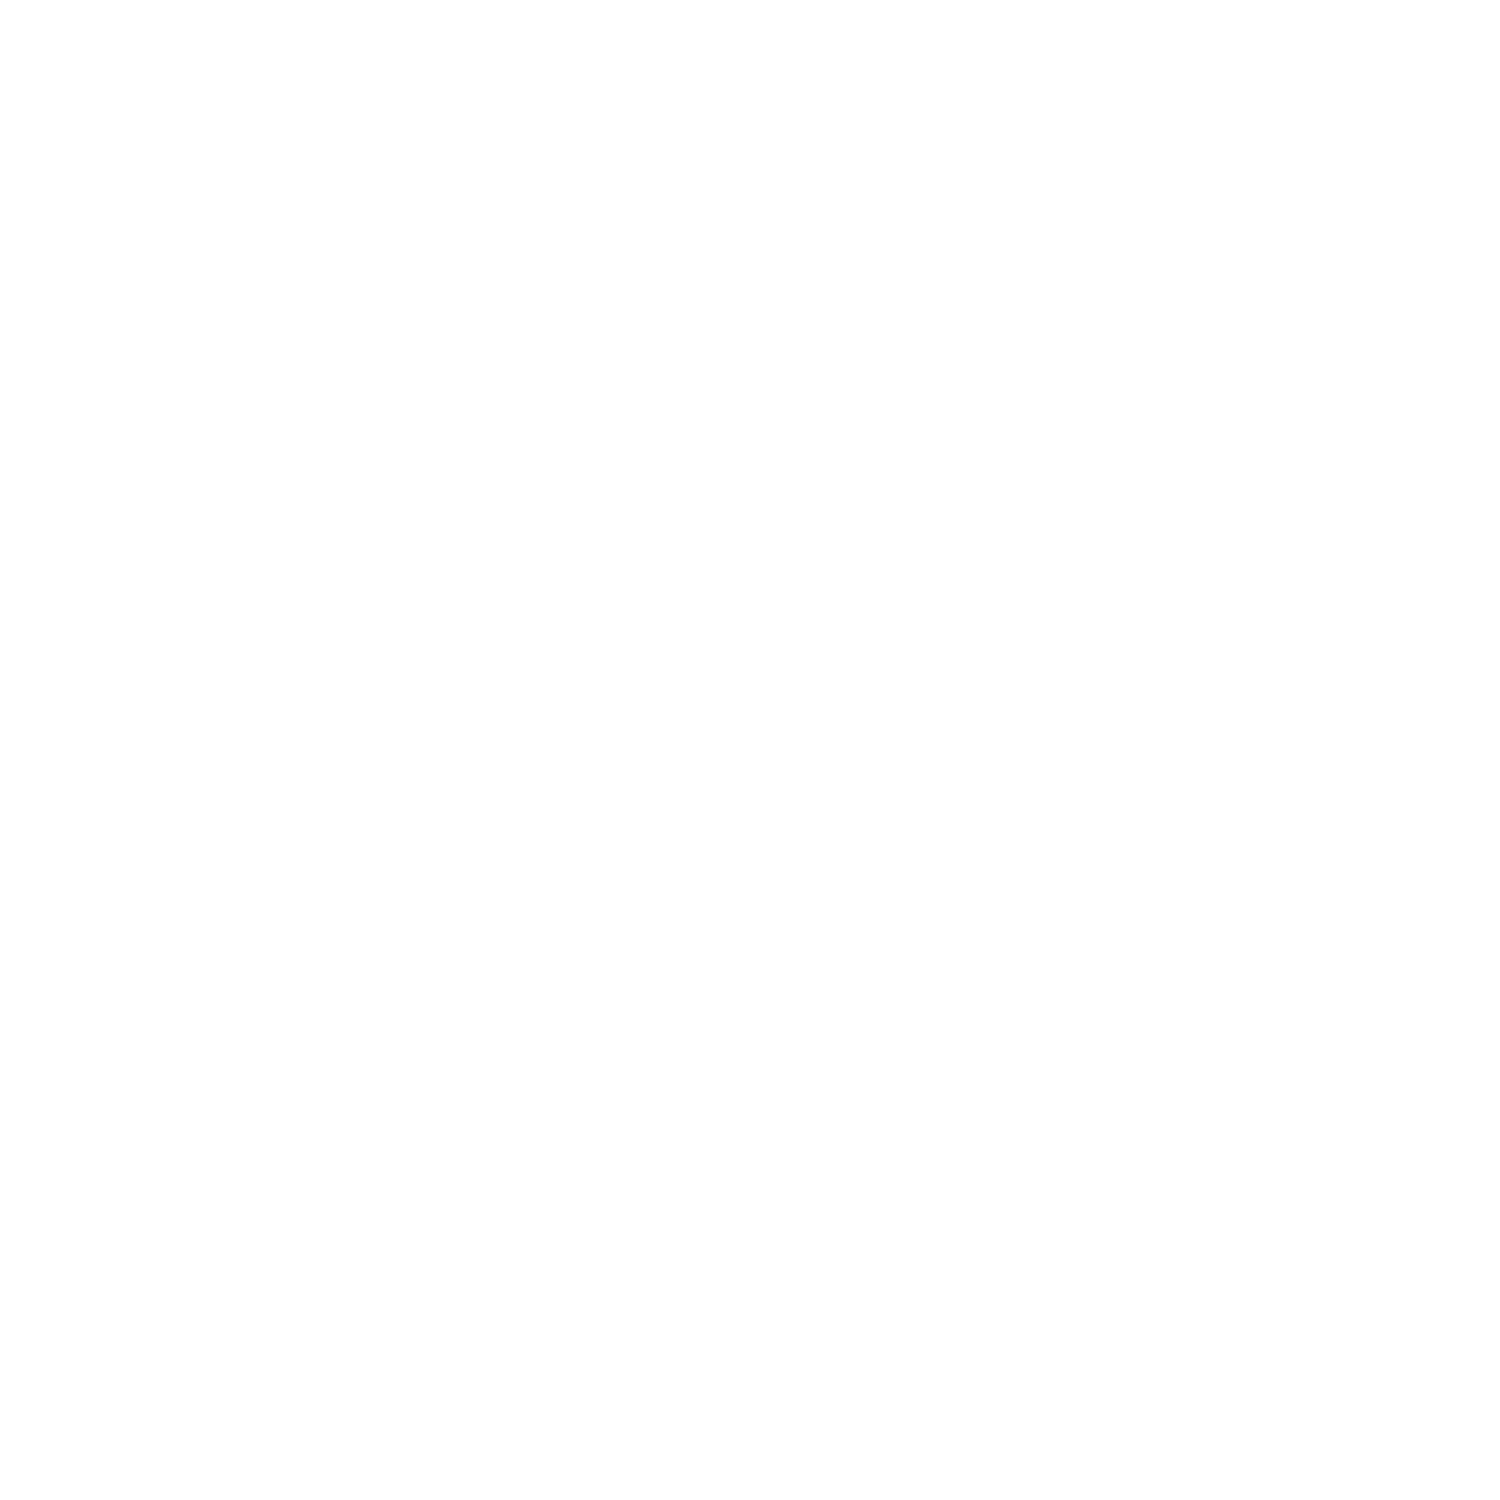 Giorgia Mannella Personal Trainer